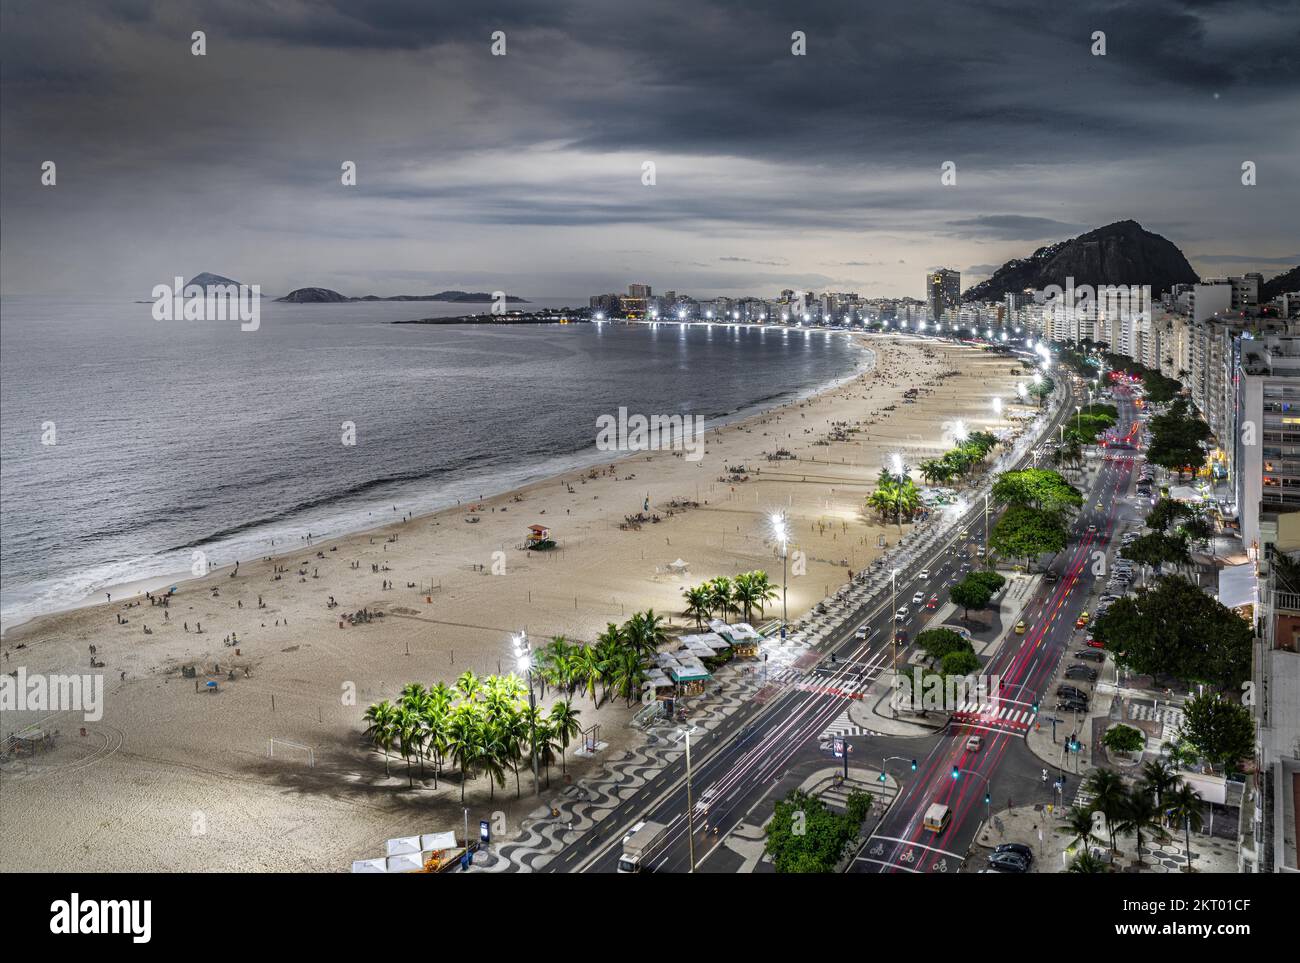 Copacabana, Rio de Janeiro, Brésil, mélange de vues de nuit et de jour, fait à partir de deux photos. Banque D'Images